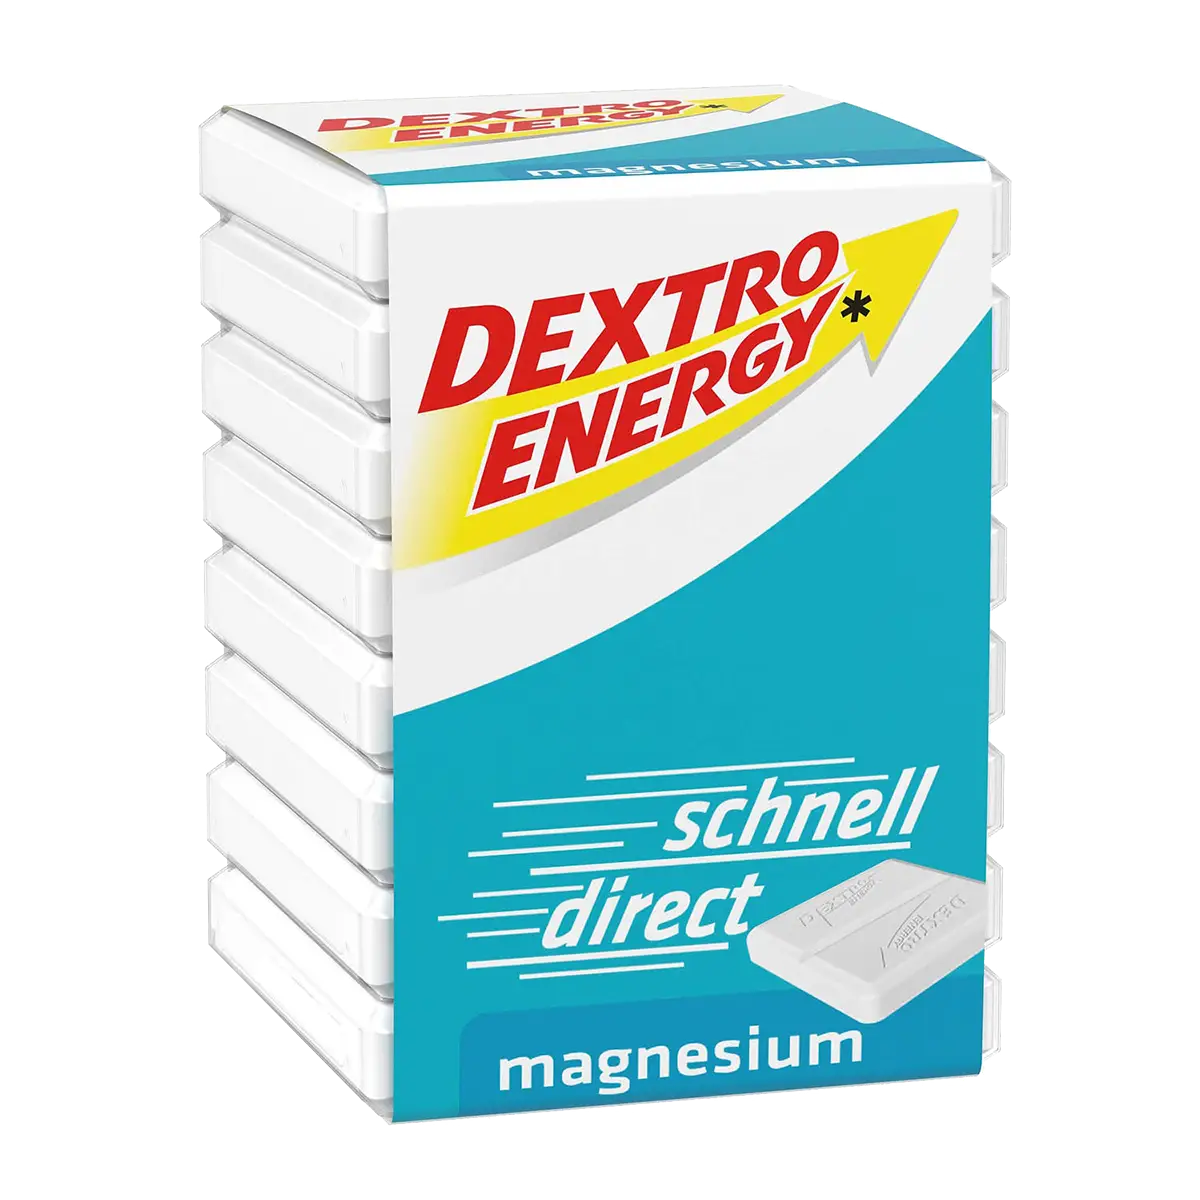 Dextro Energy cube, magnesium, 46 g